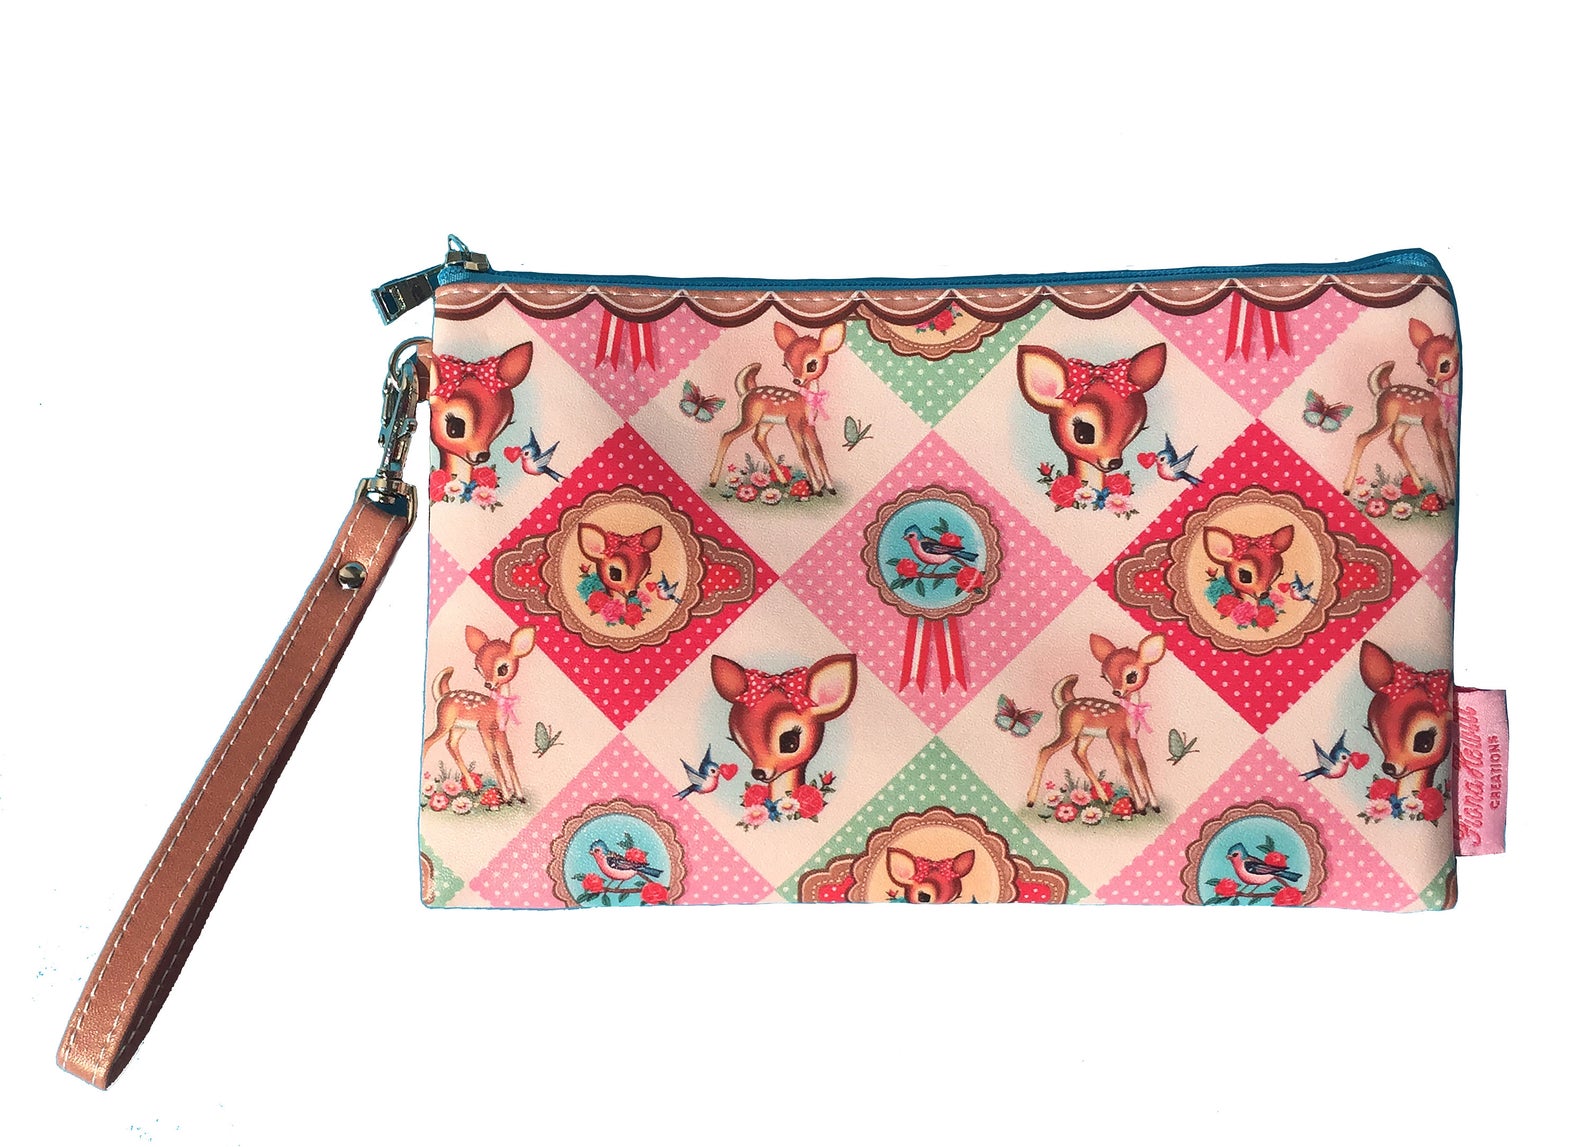 ダイヤモンド鹿メイクアップ/クラッチ財布バンビレトロキッチュヴィンテージノスタルジックな赤ちゃん鹿や鳥の化粧品バッグ